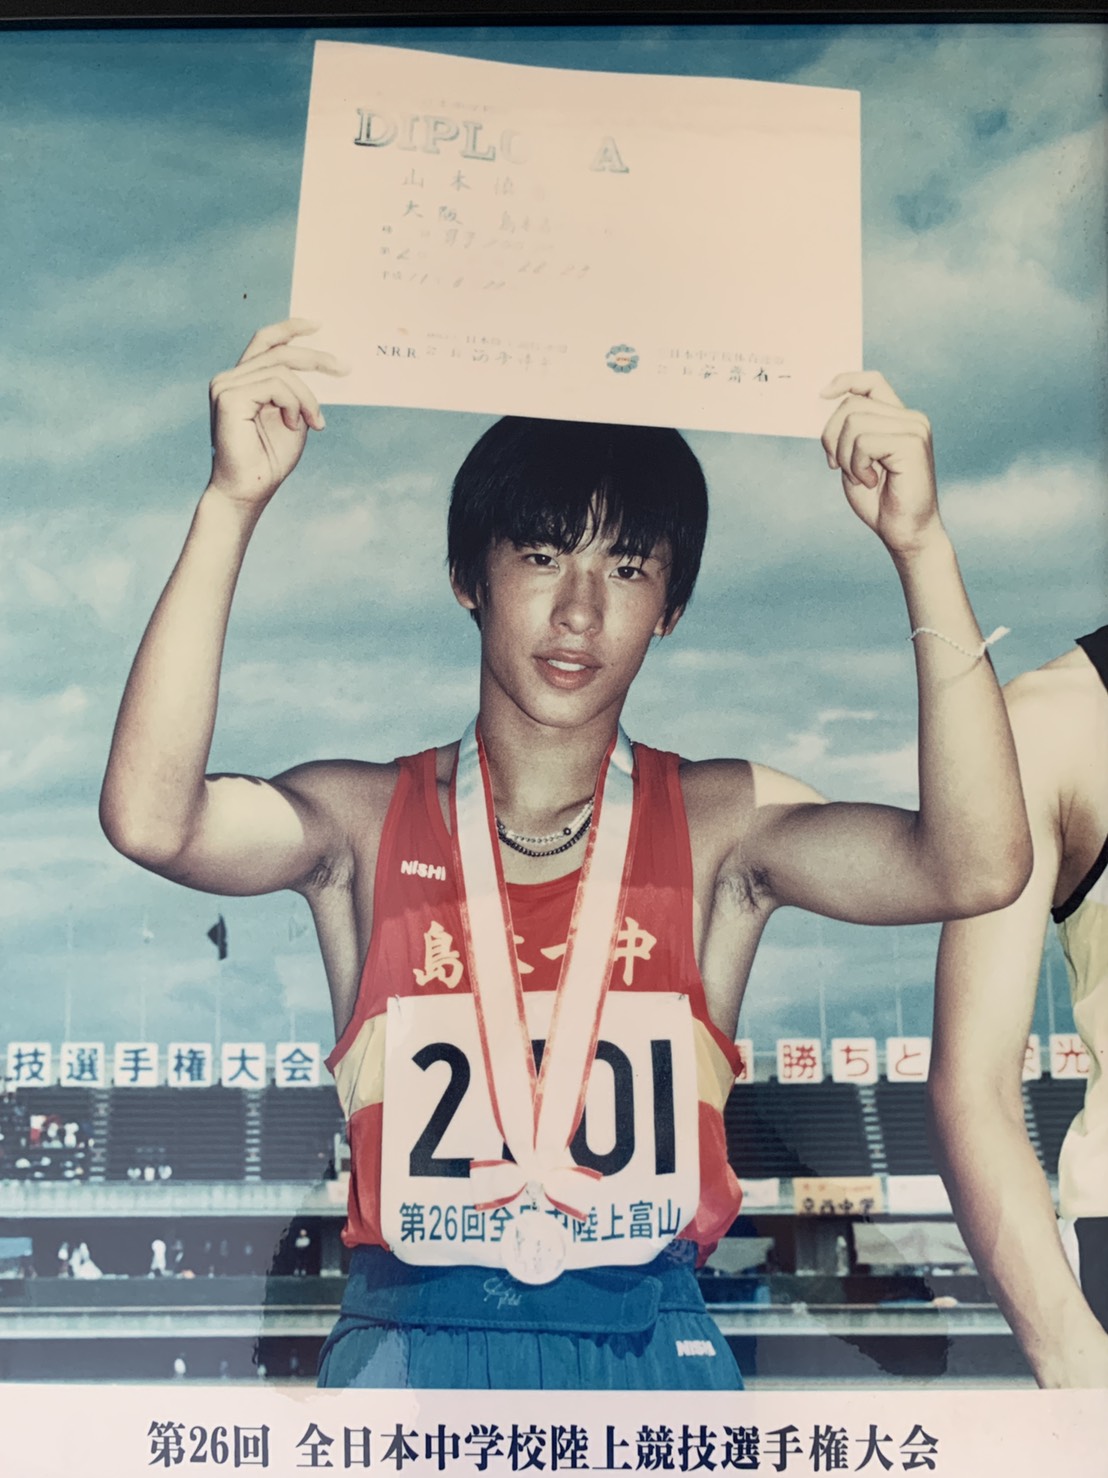 1999年の富山全中にて 2年生にして200mで準優勝